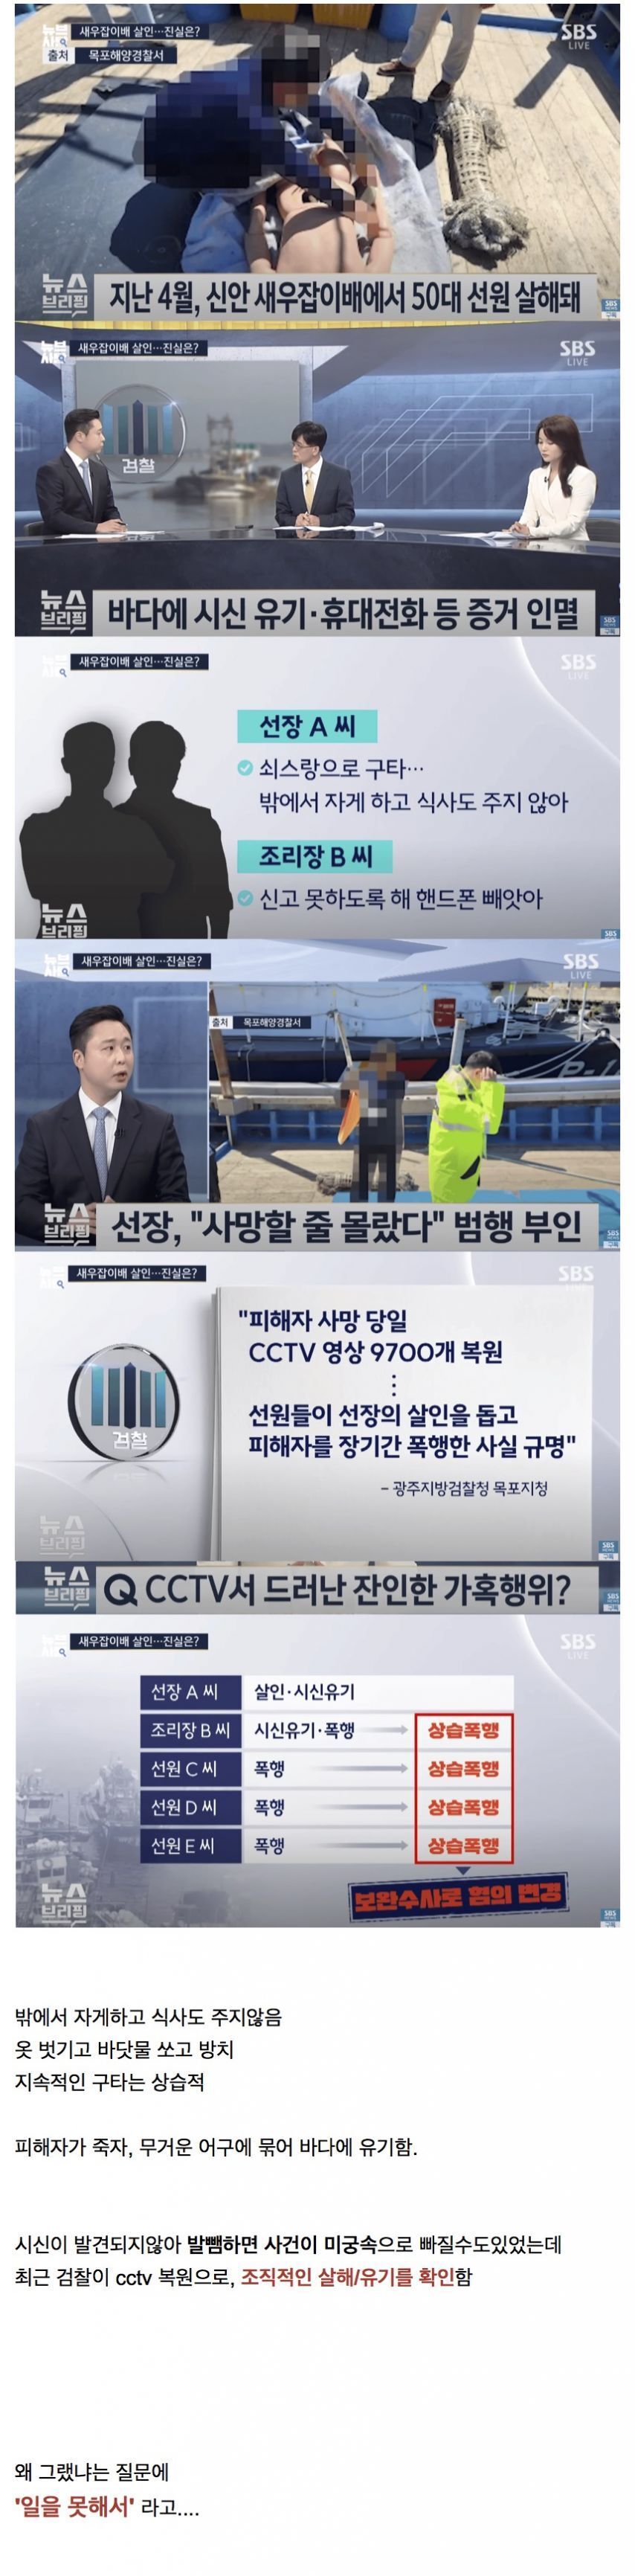 신안 새우잡이배 살인사건 CCTV가 밝힌 진실.jpg